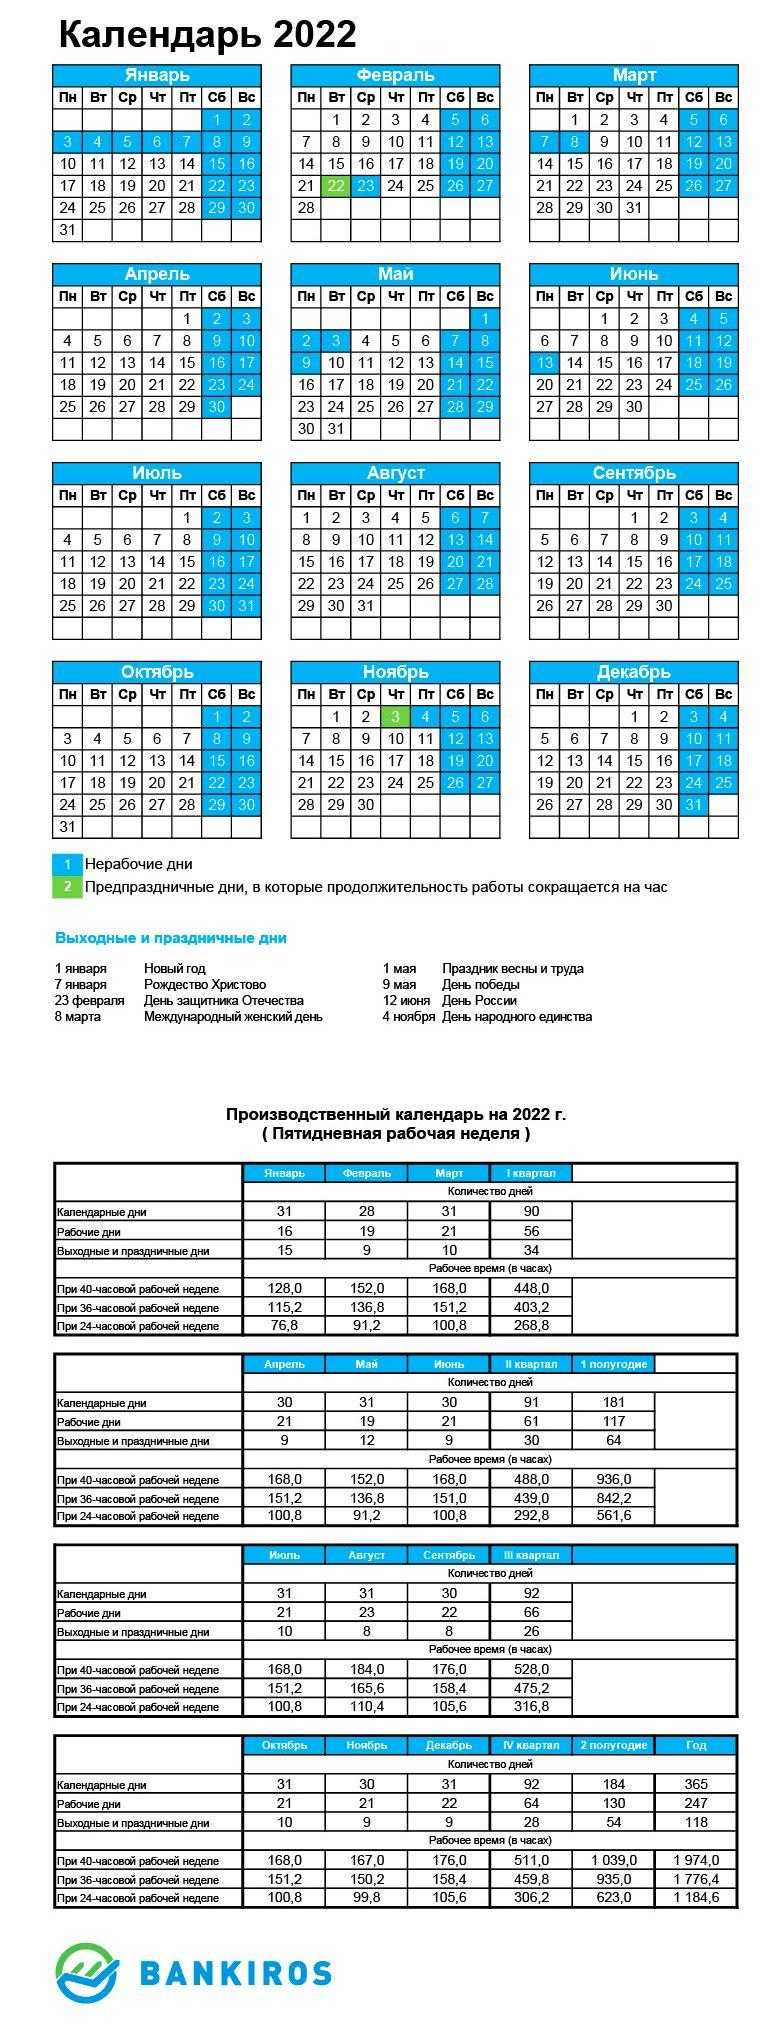 Производственный календарь формат а4